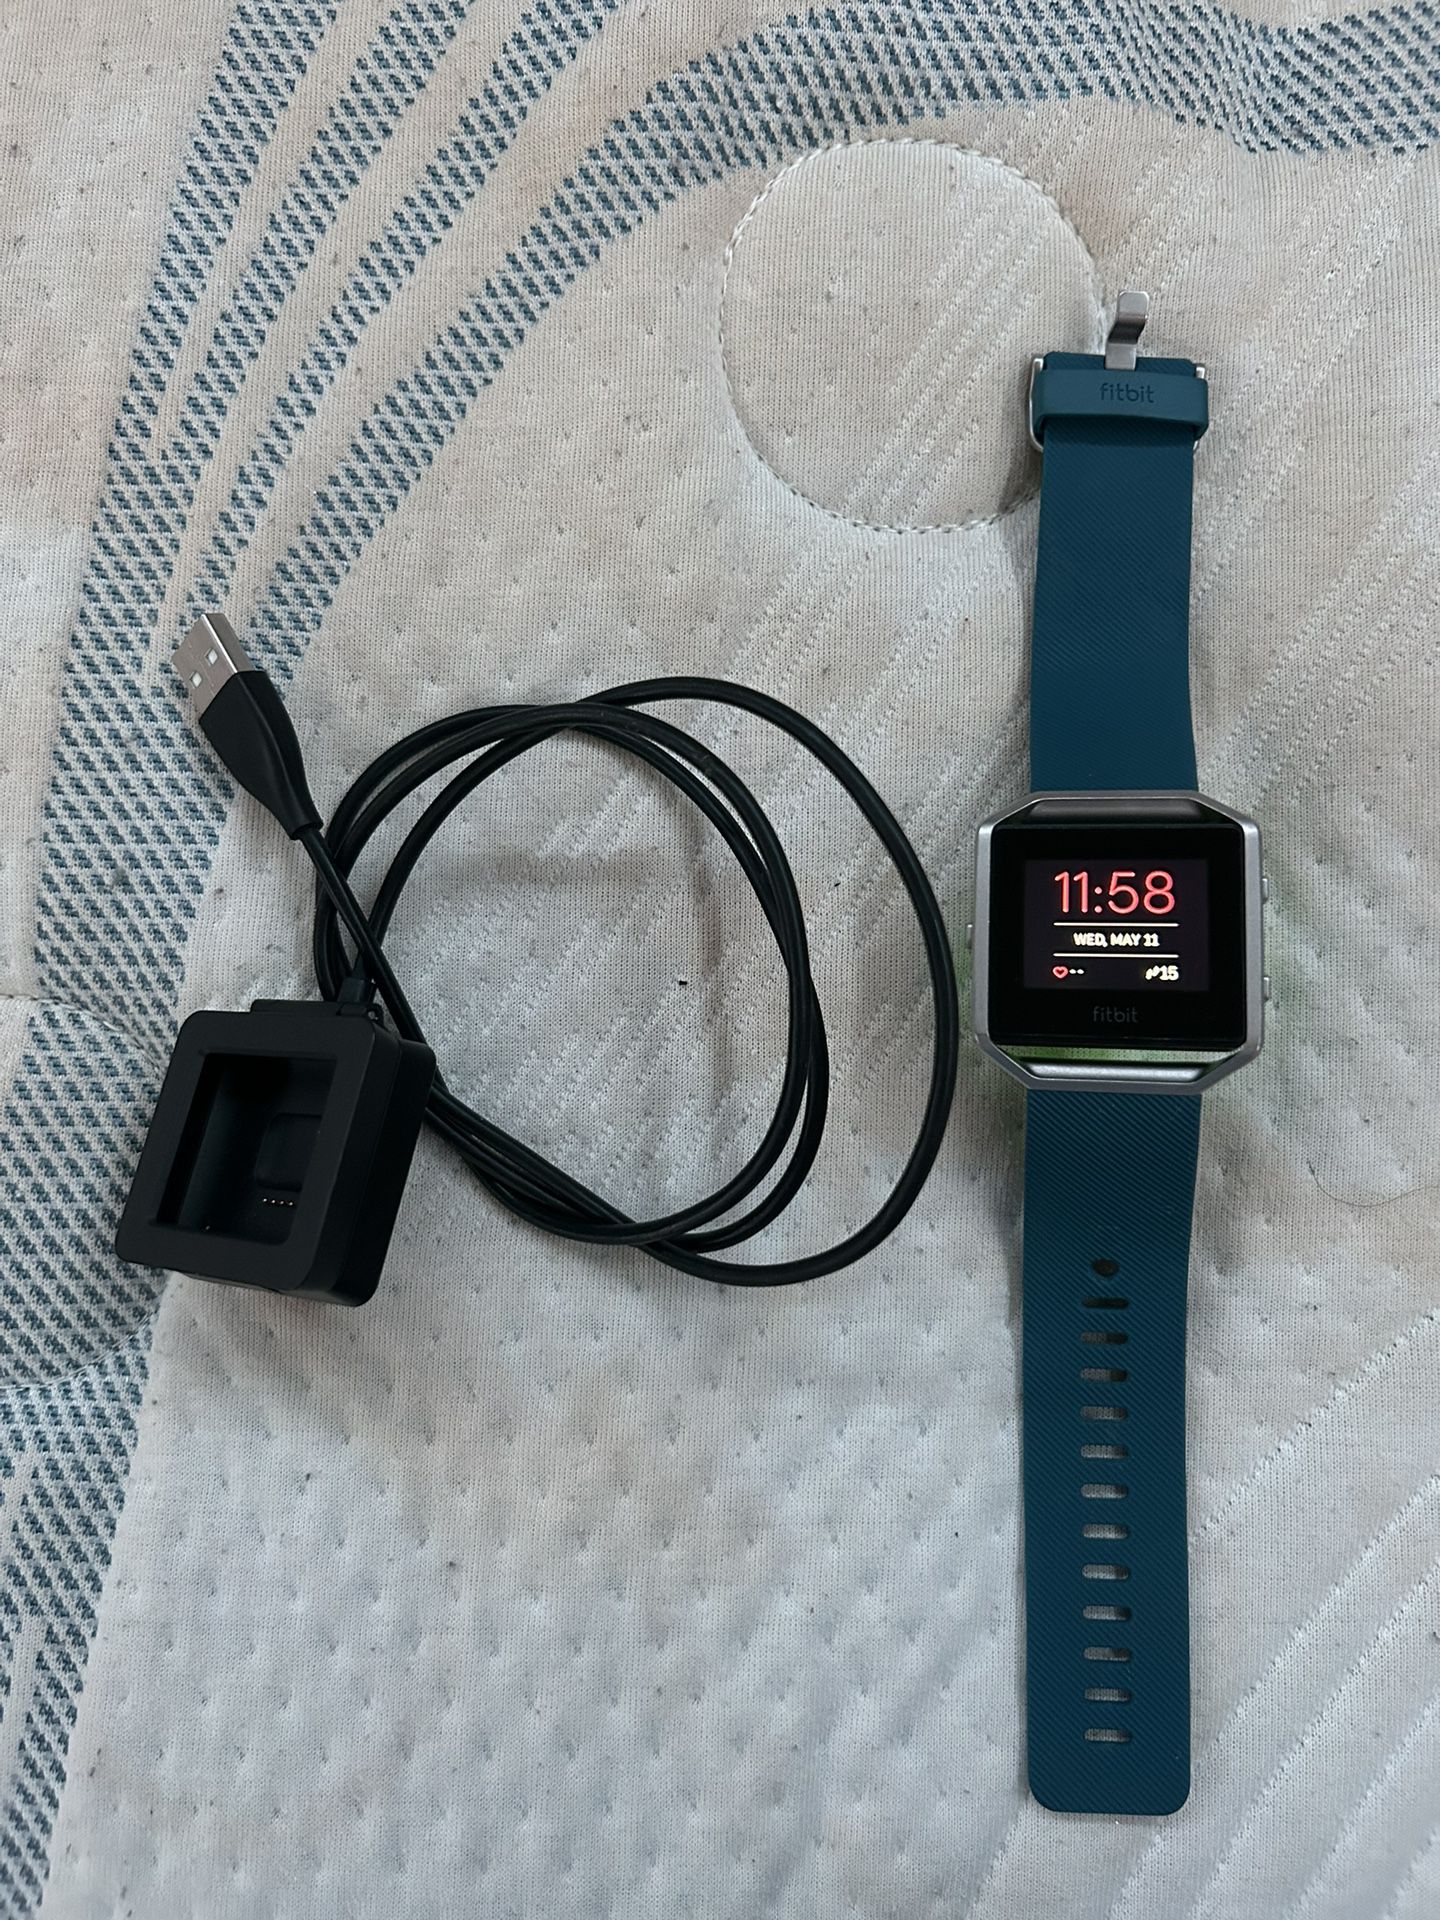 FitBit Blaze Smart Watch Fitness Tracker